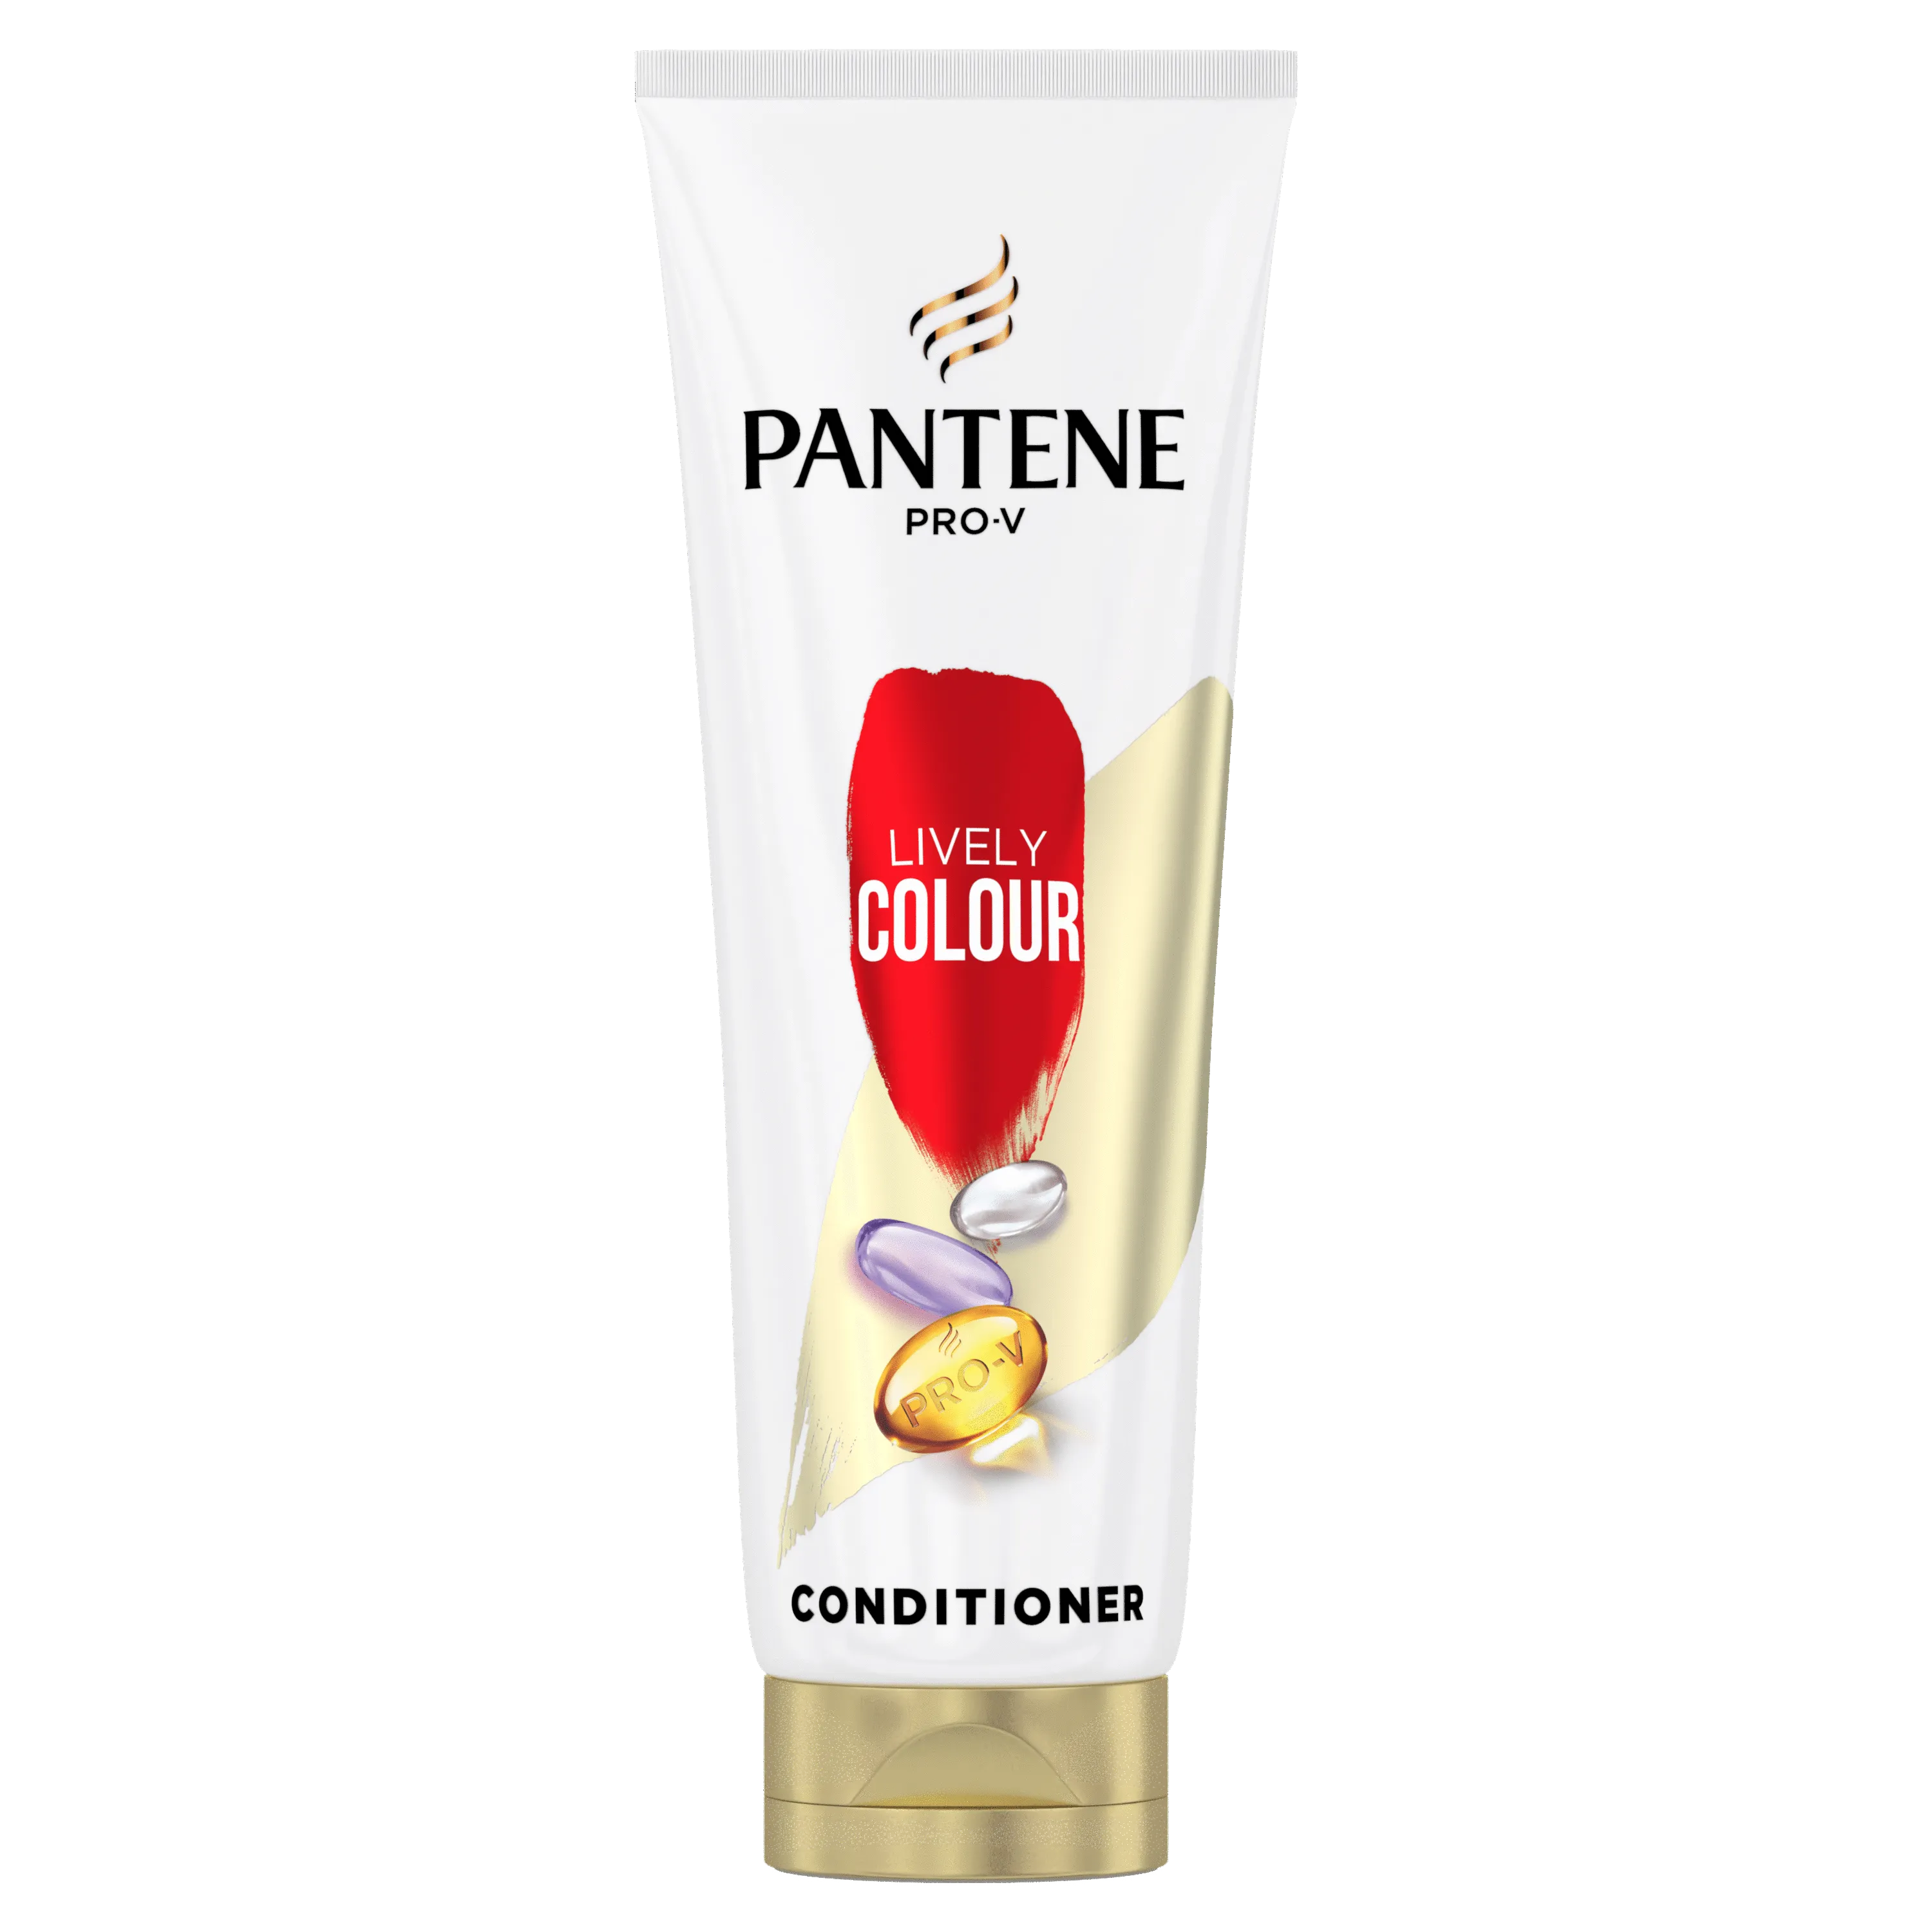 Pantene Pro-V Lively Colour odżywka do włosów, 200 ml